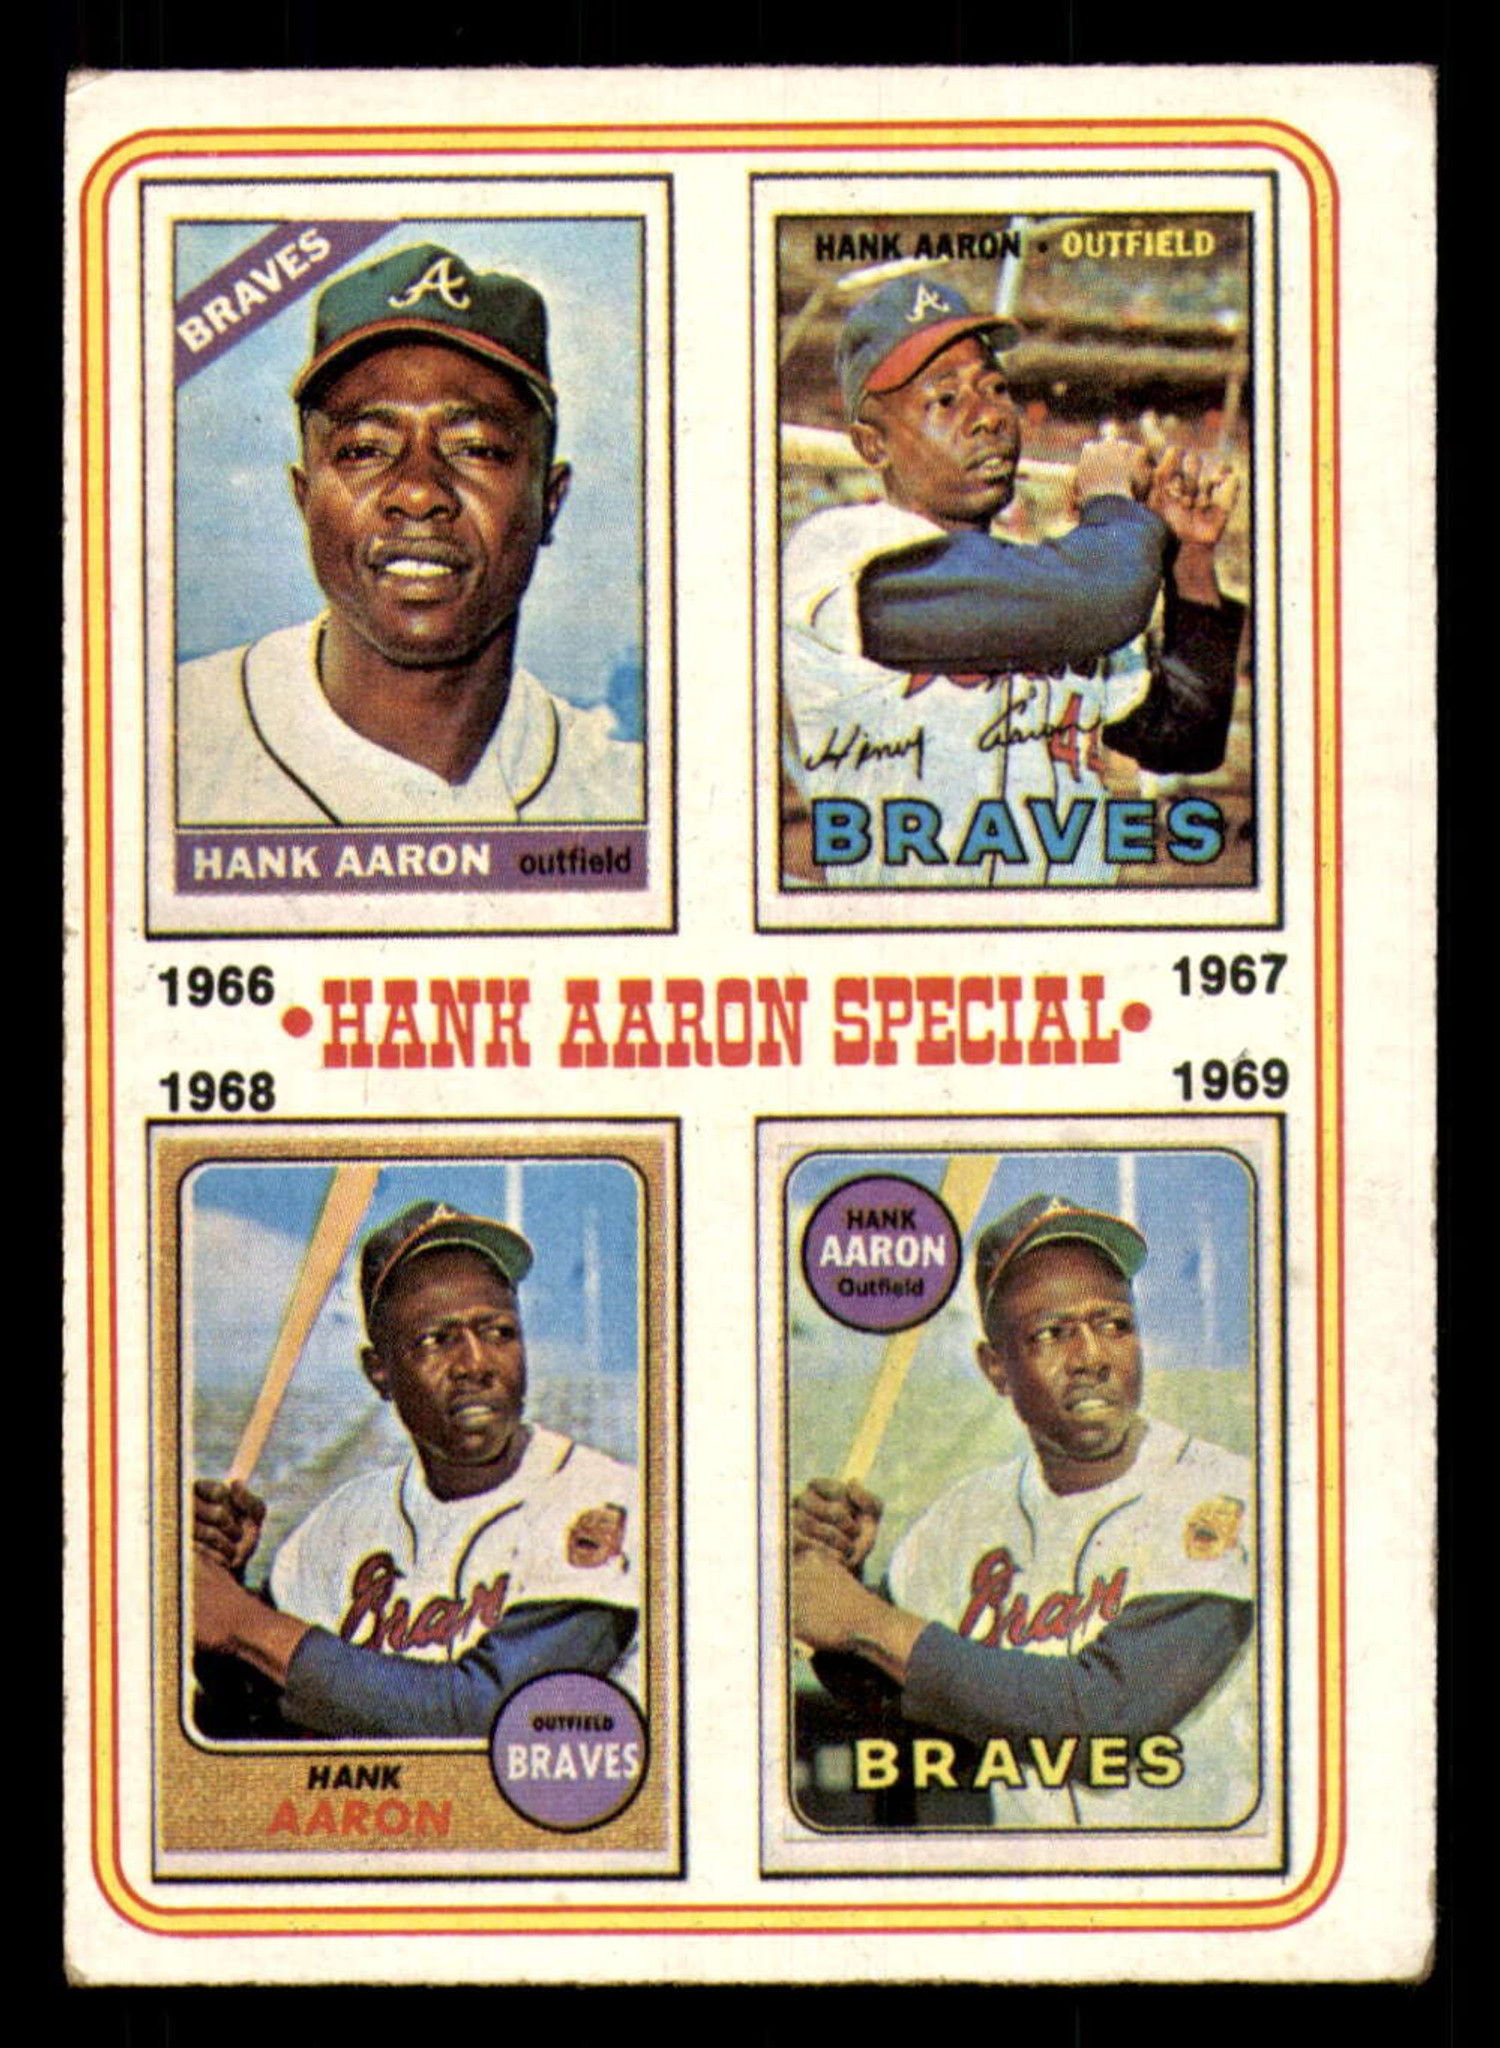 1967 hank aaron baseball card